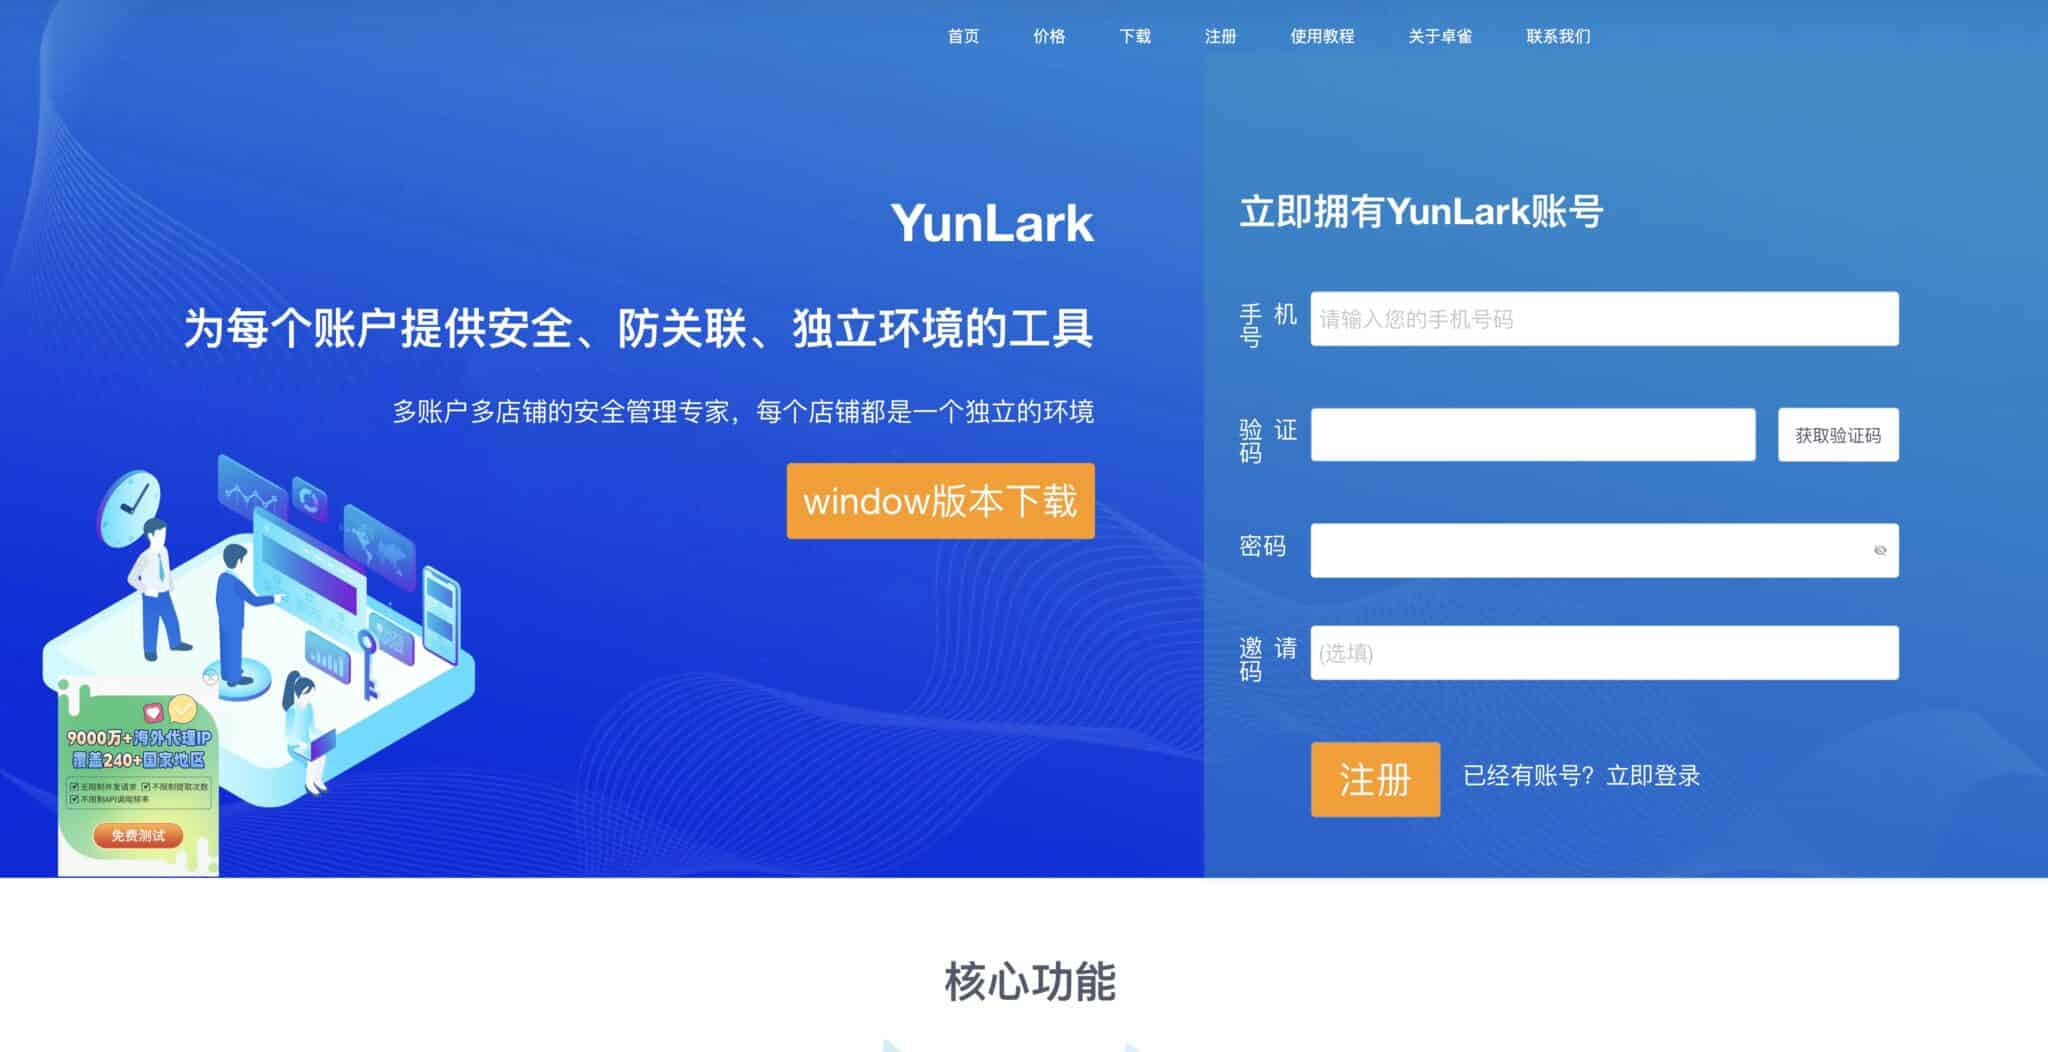 YunLark: The Innovative Solution for Cross-Border E-commerce